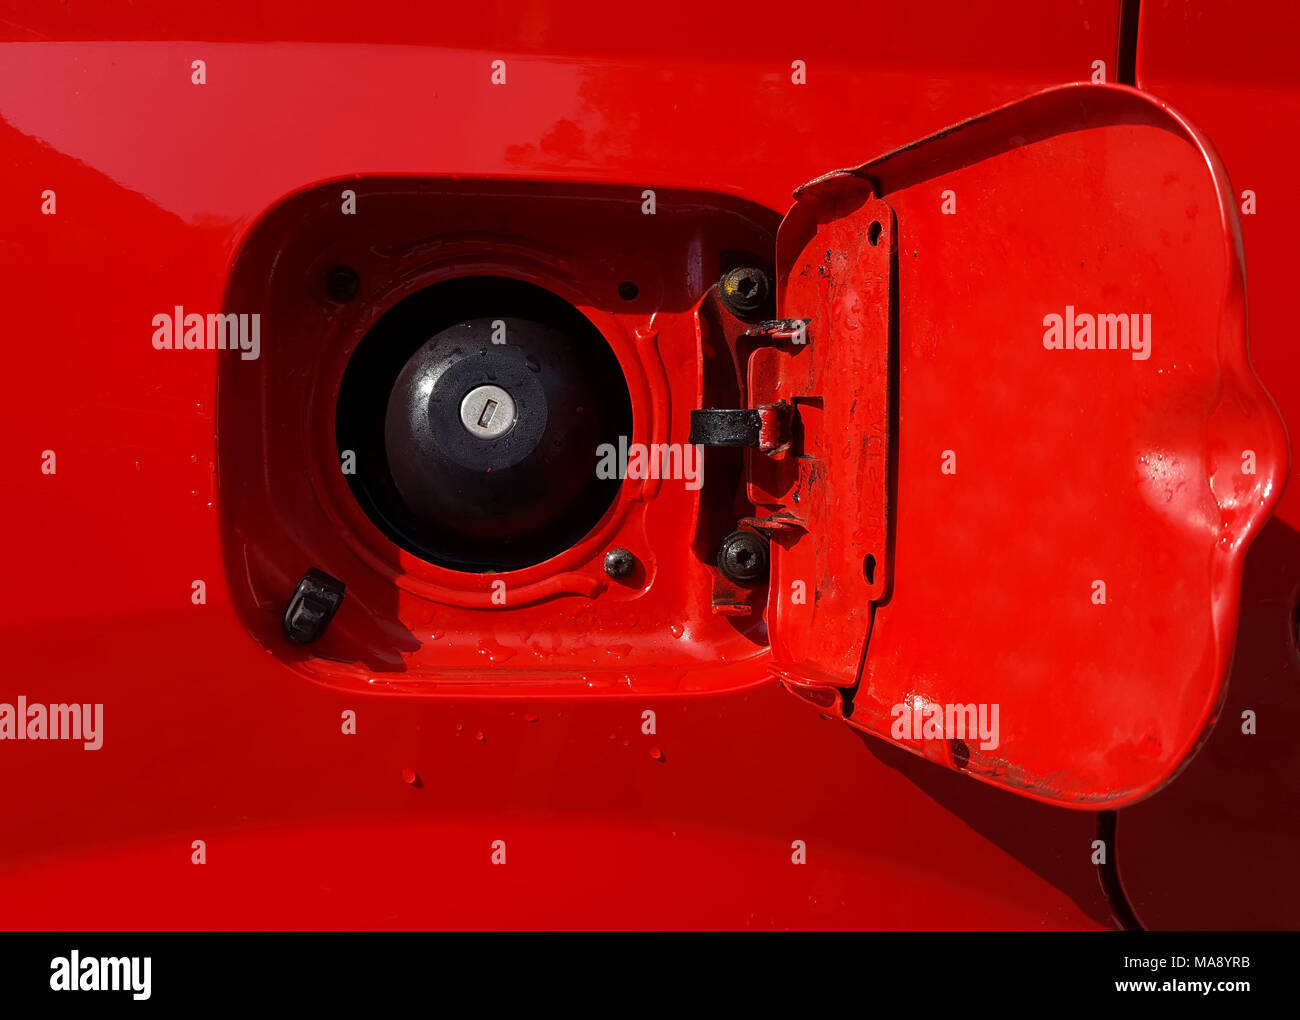 Tankdeckel des Auto Stockfotografie - Alamy